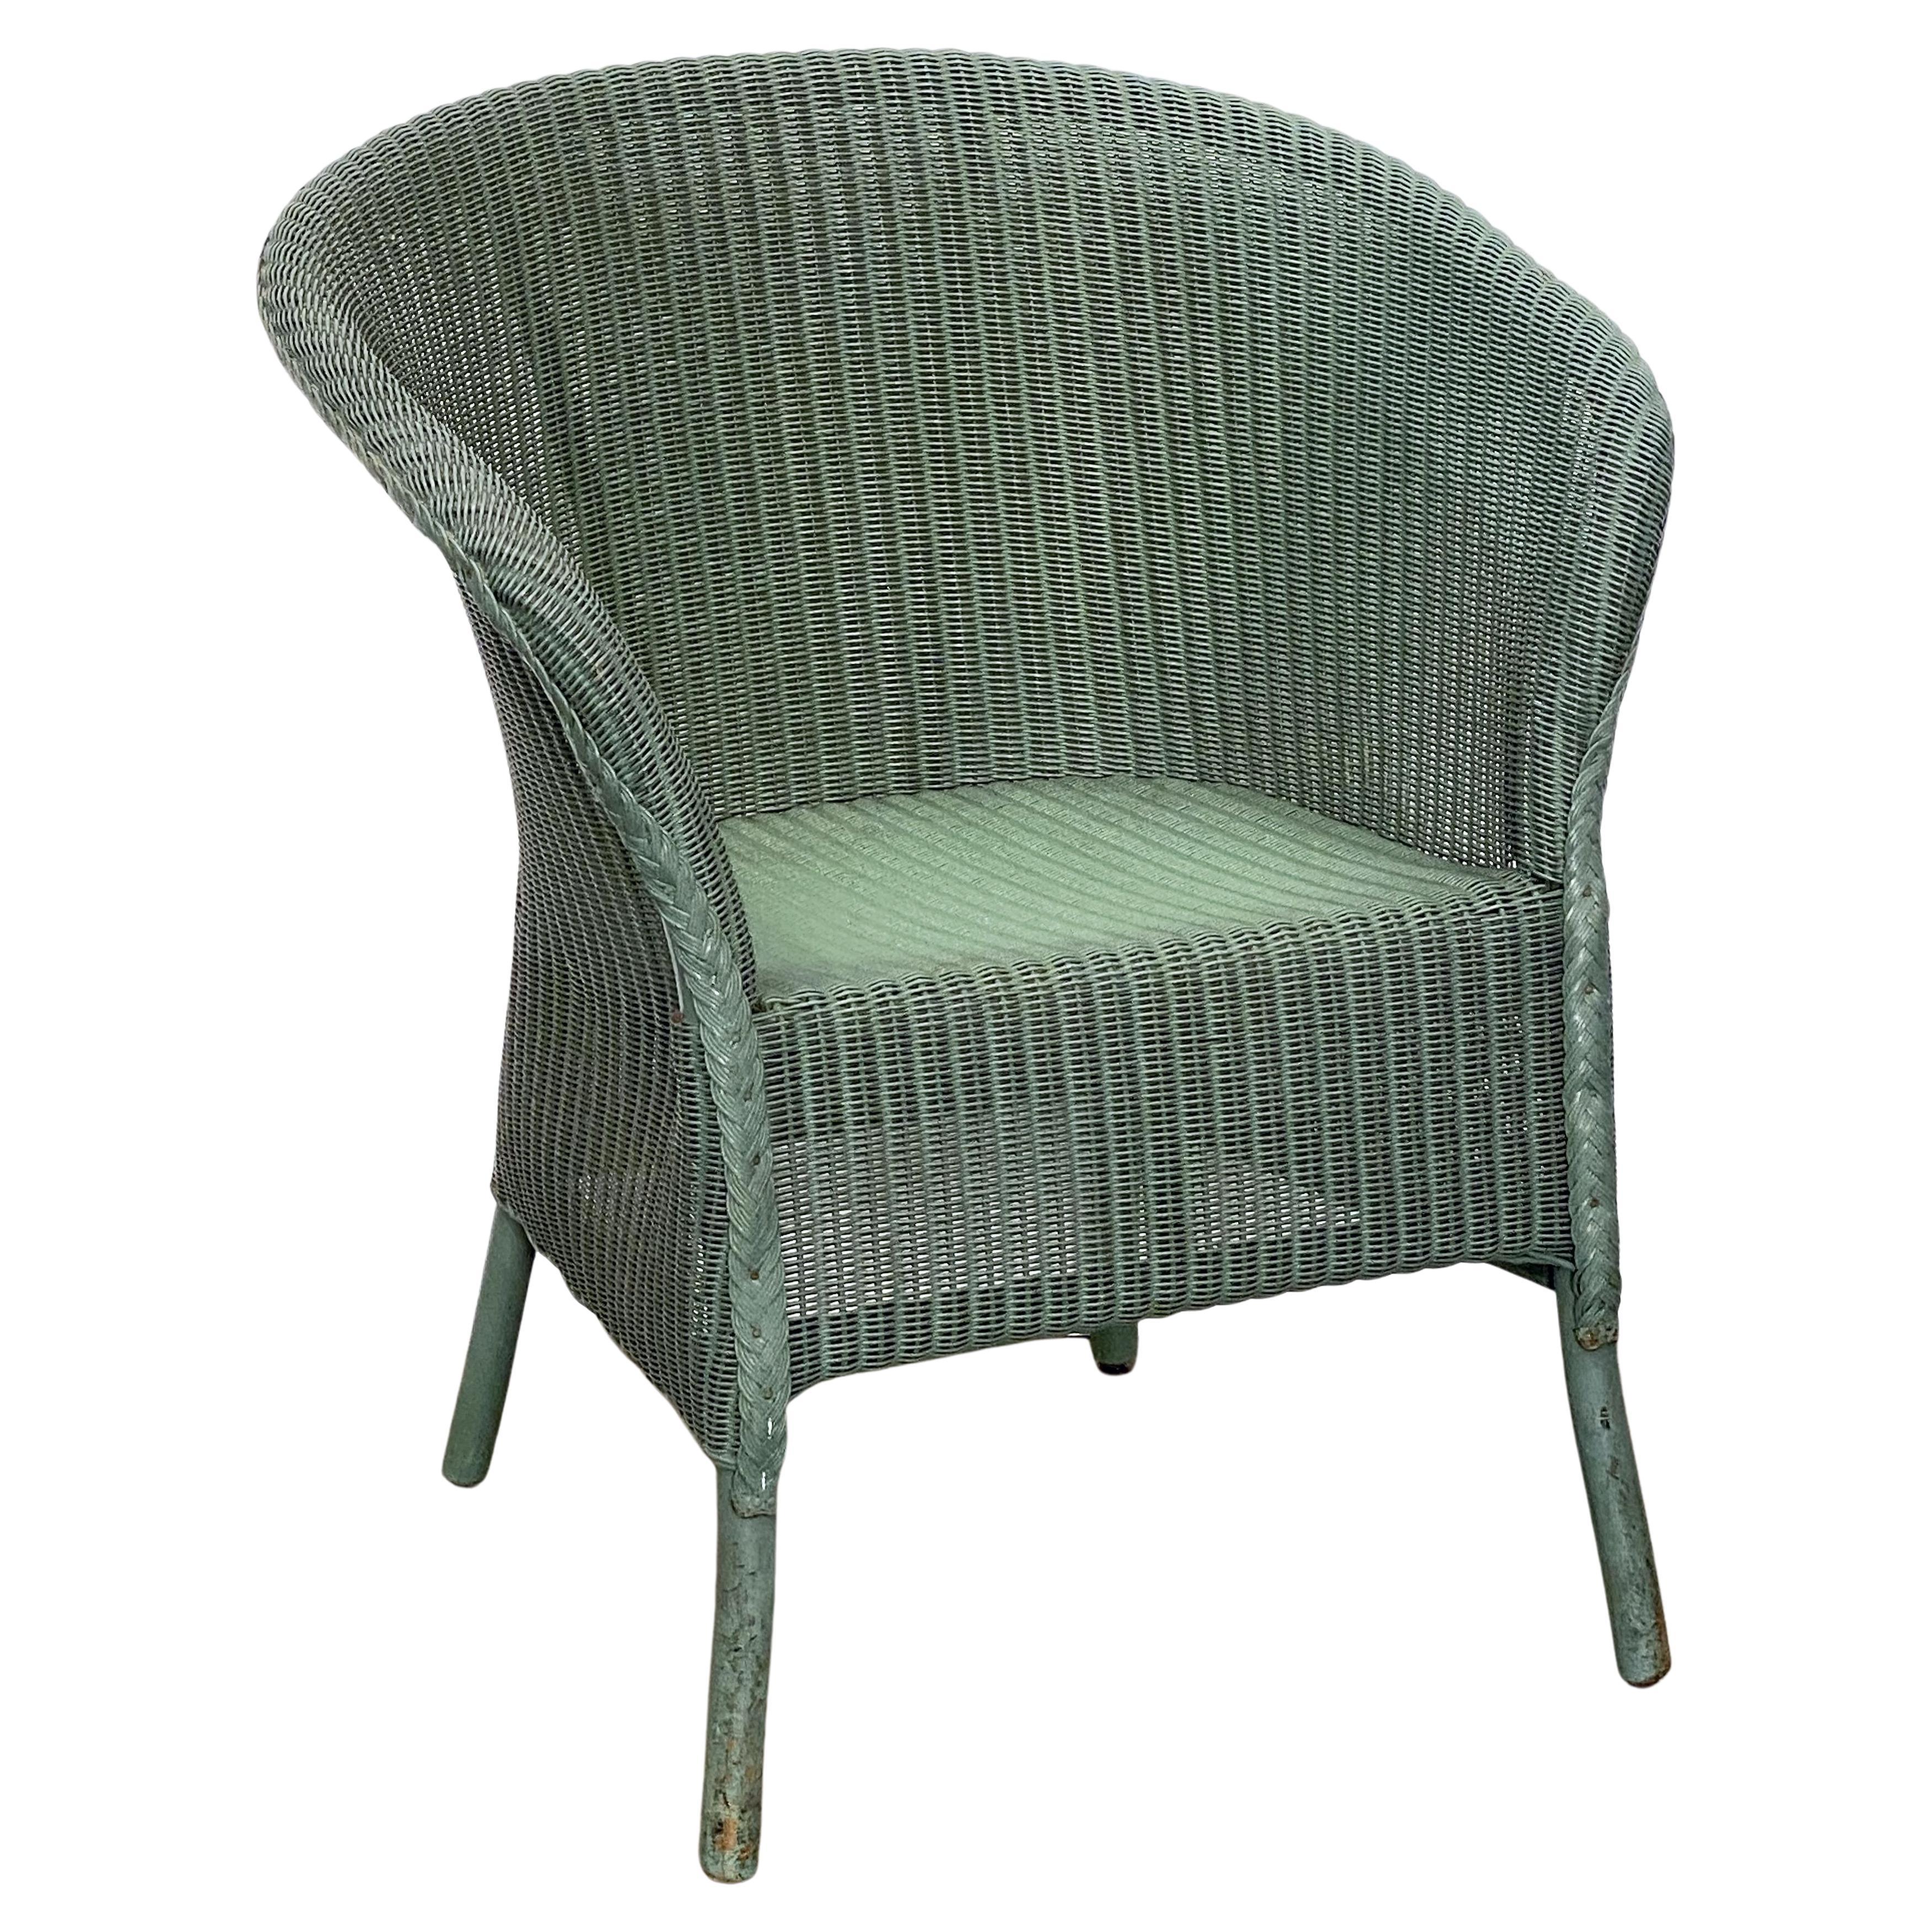 English Wicker Garden or Lounge Chair by Lloyd Loom